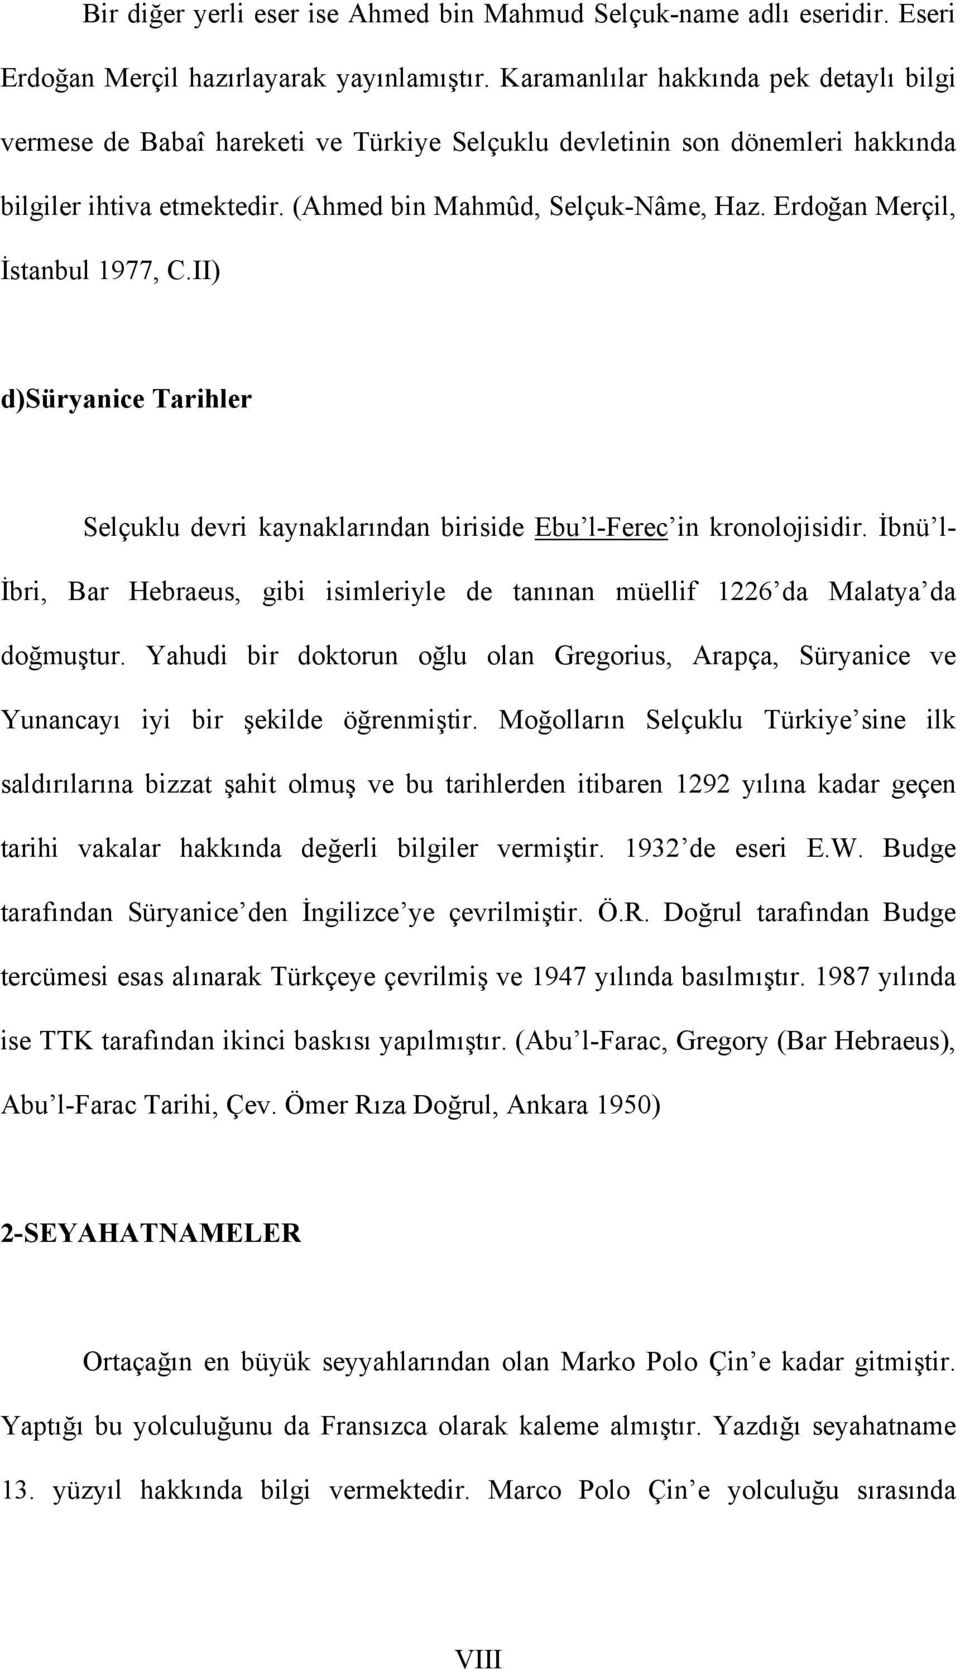 Erdoğan Merçil, İstanbul 1977, C.II) d)süryanice Tarihler Selçuklu devri kaynaklarından biriside Ebu l-ferec in kronolojisidir.